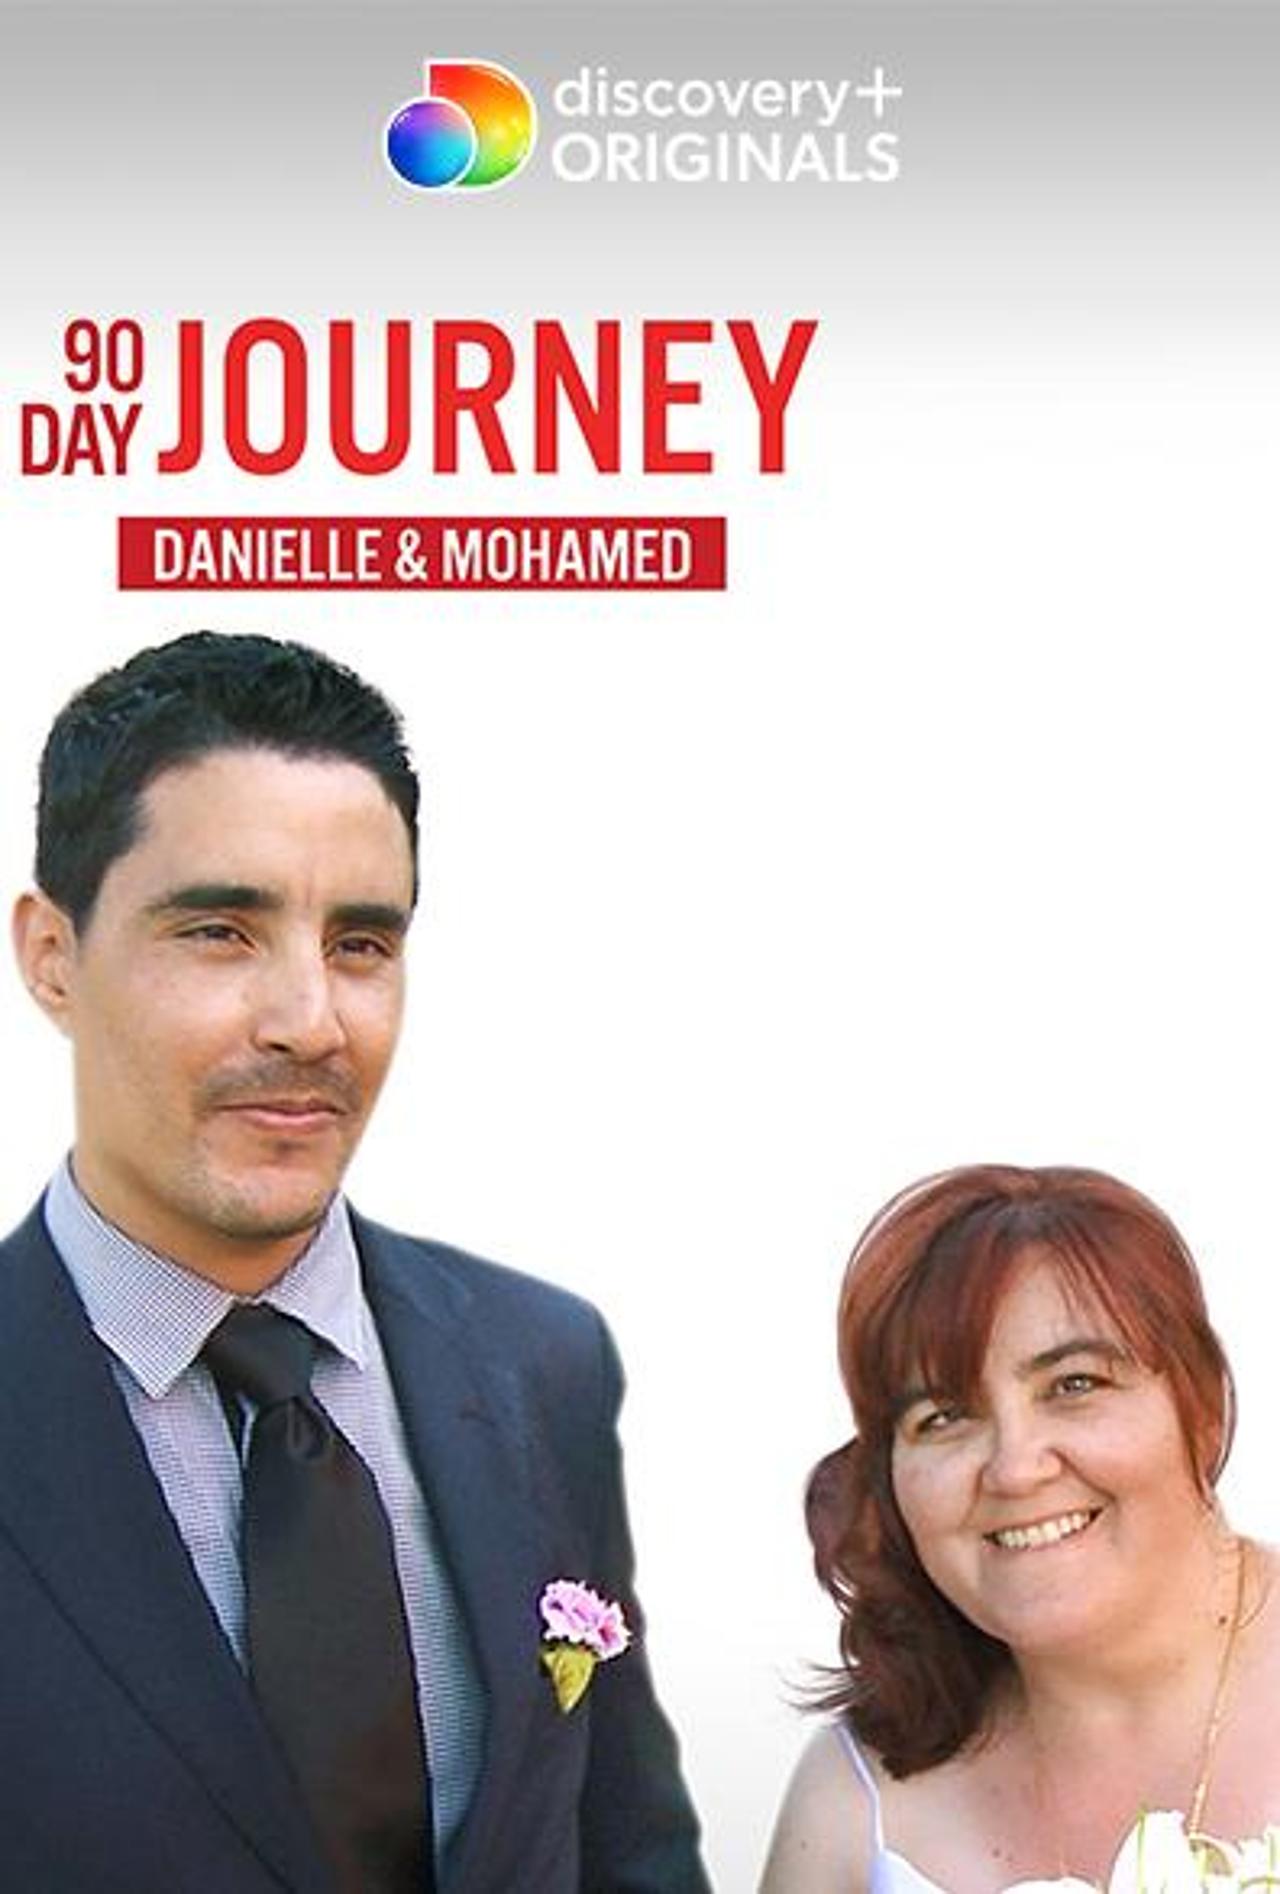 |NL| 90 Day Journey: Danielle & Mohamed